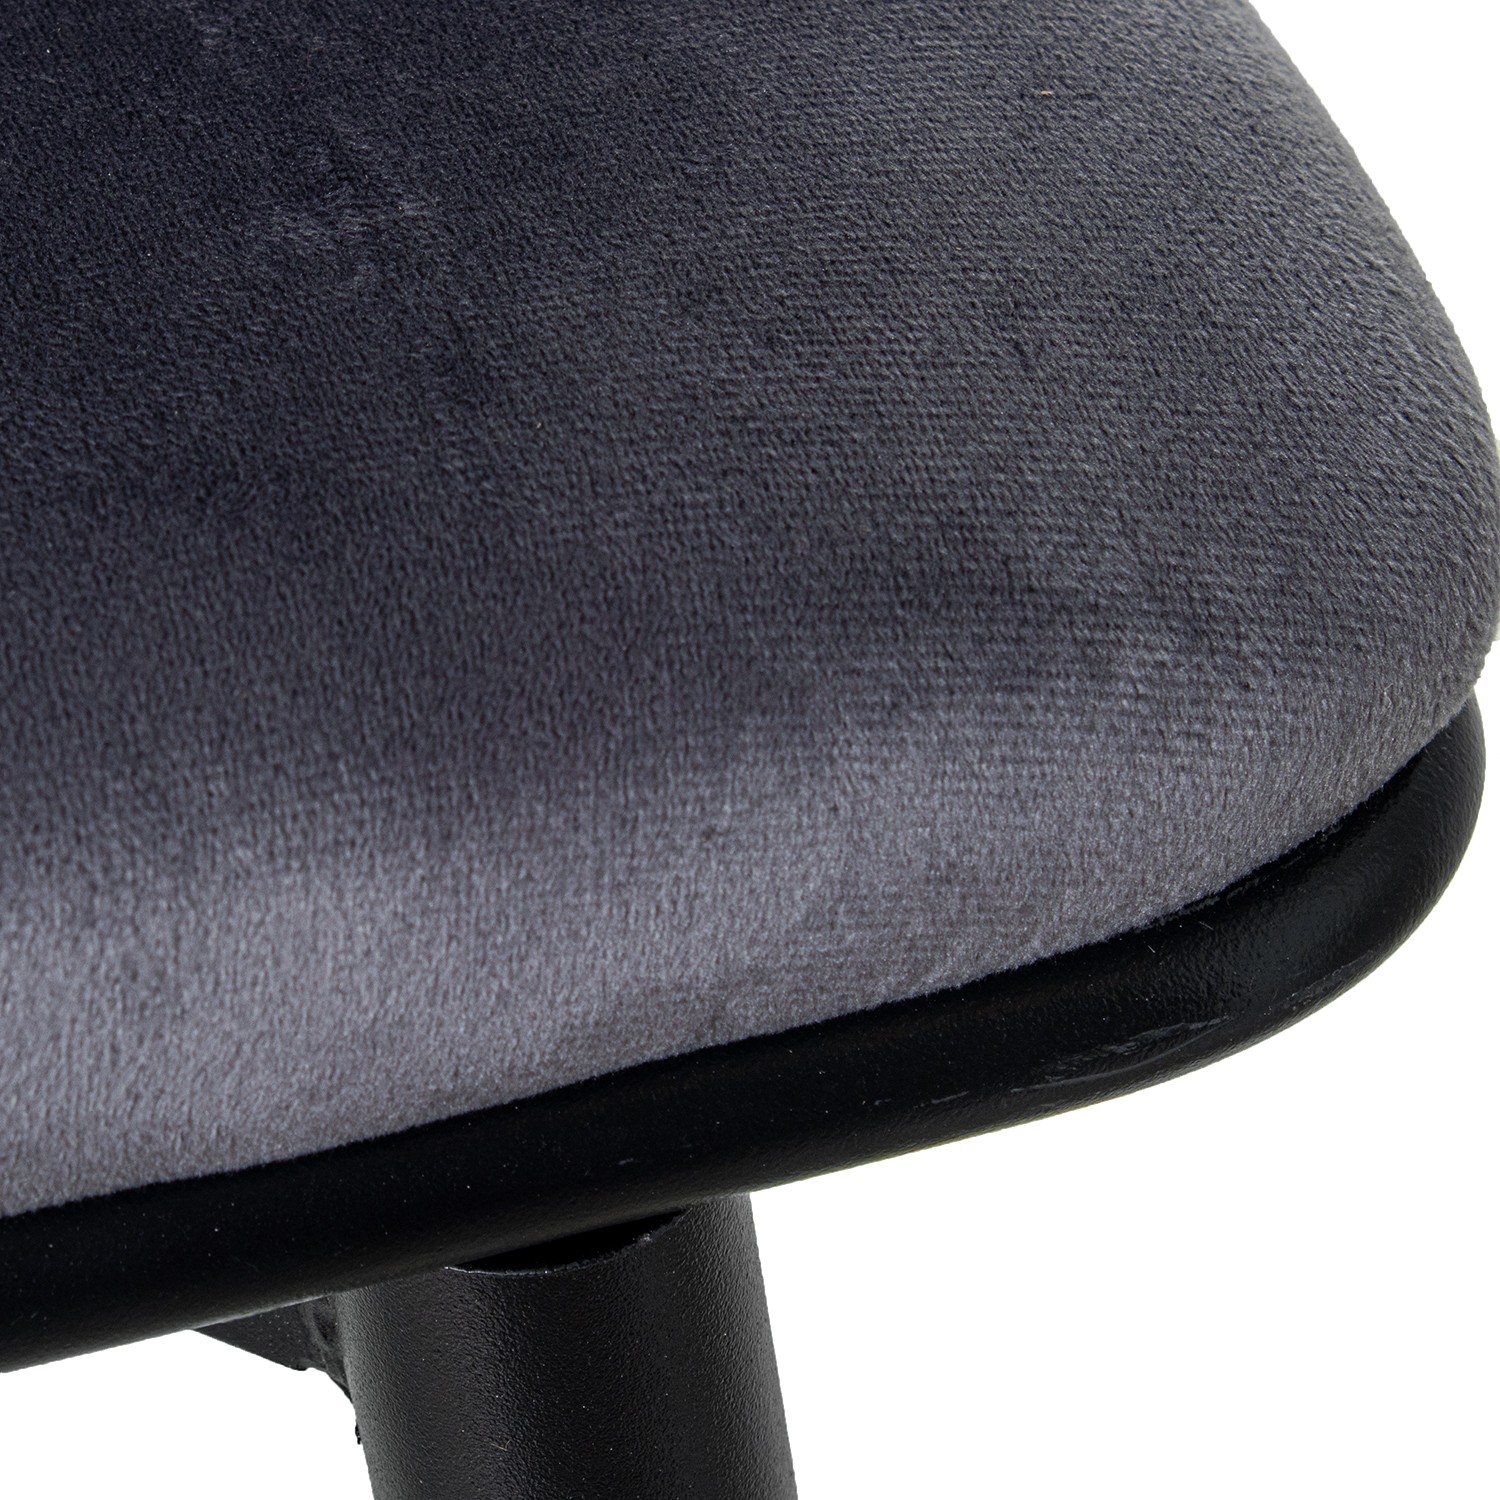 35326-silla-terciopelo-trenzado-gris-negro-6.jpg